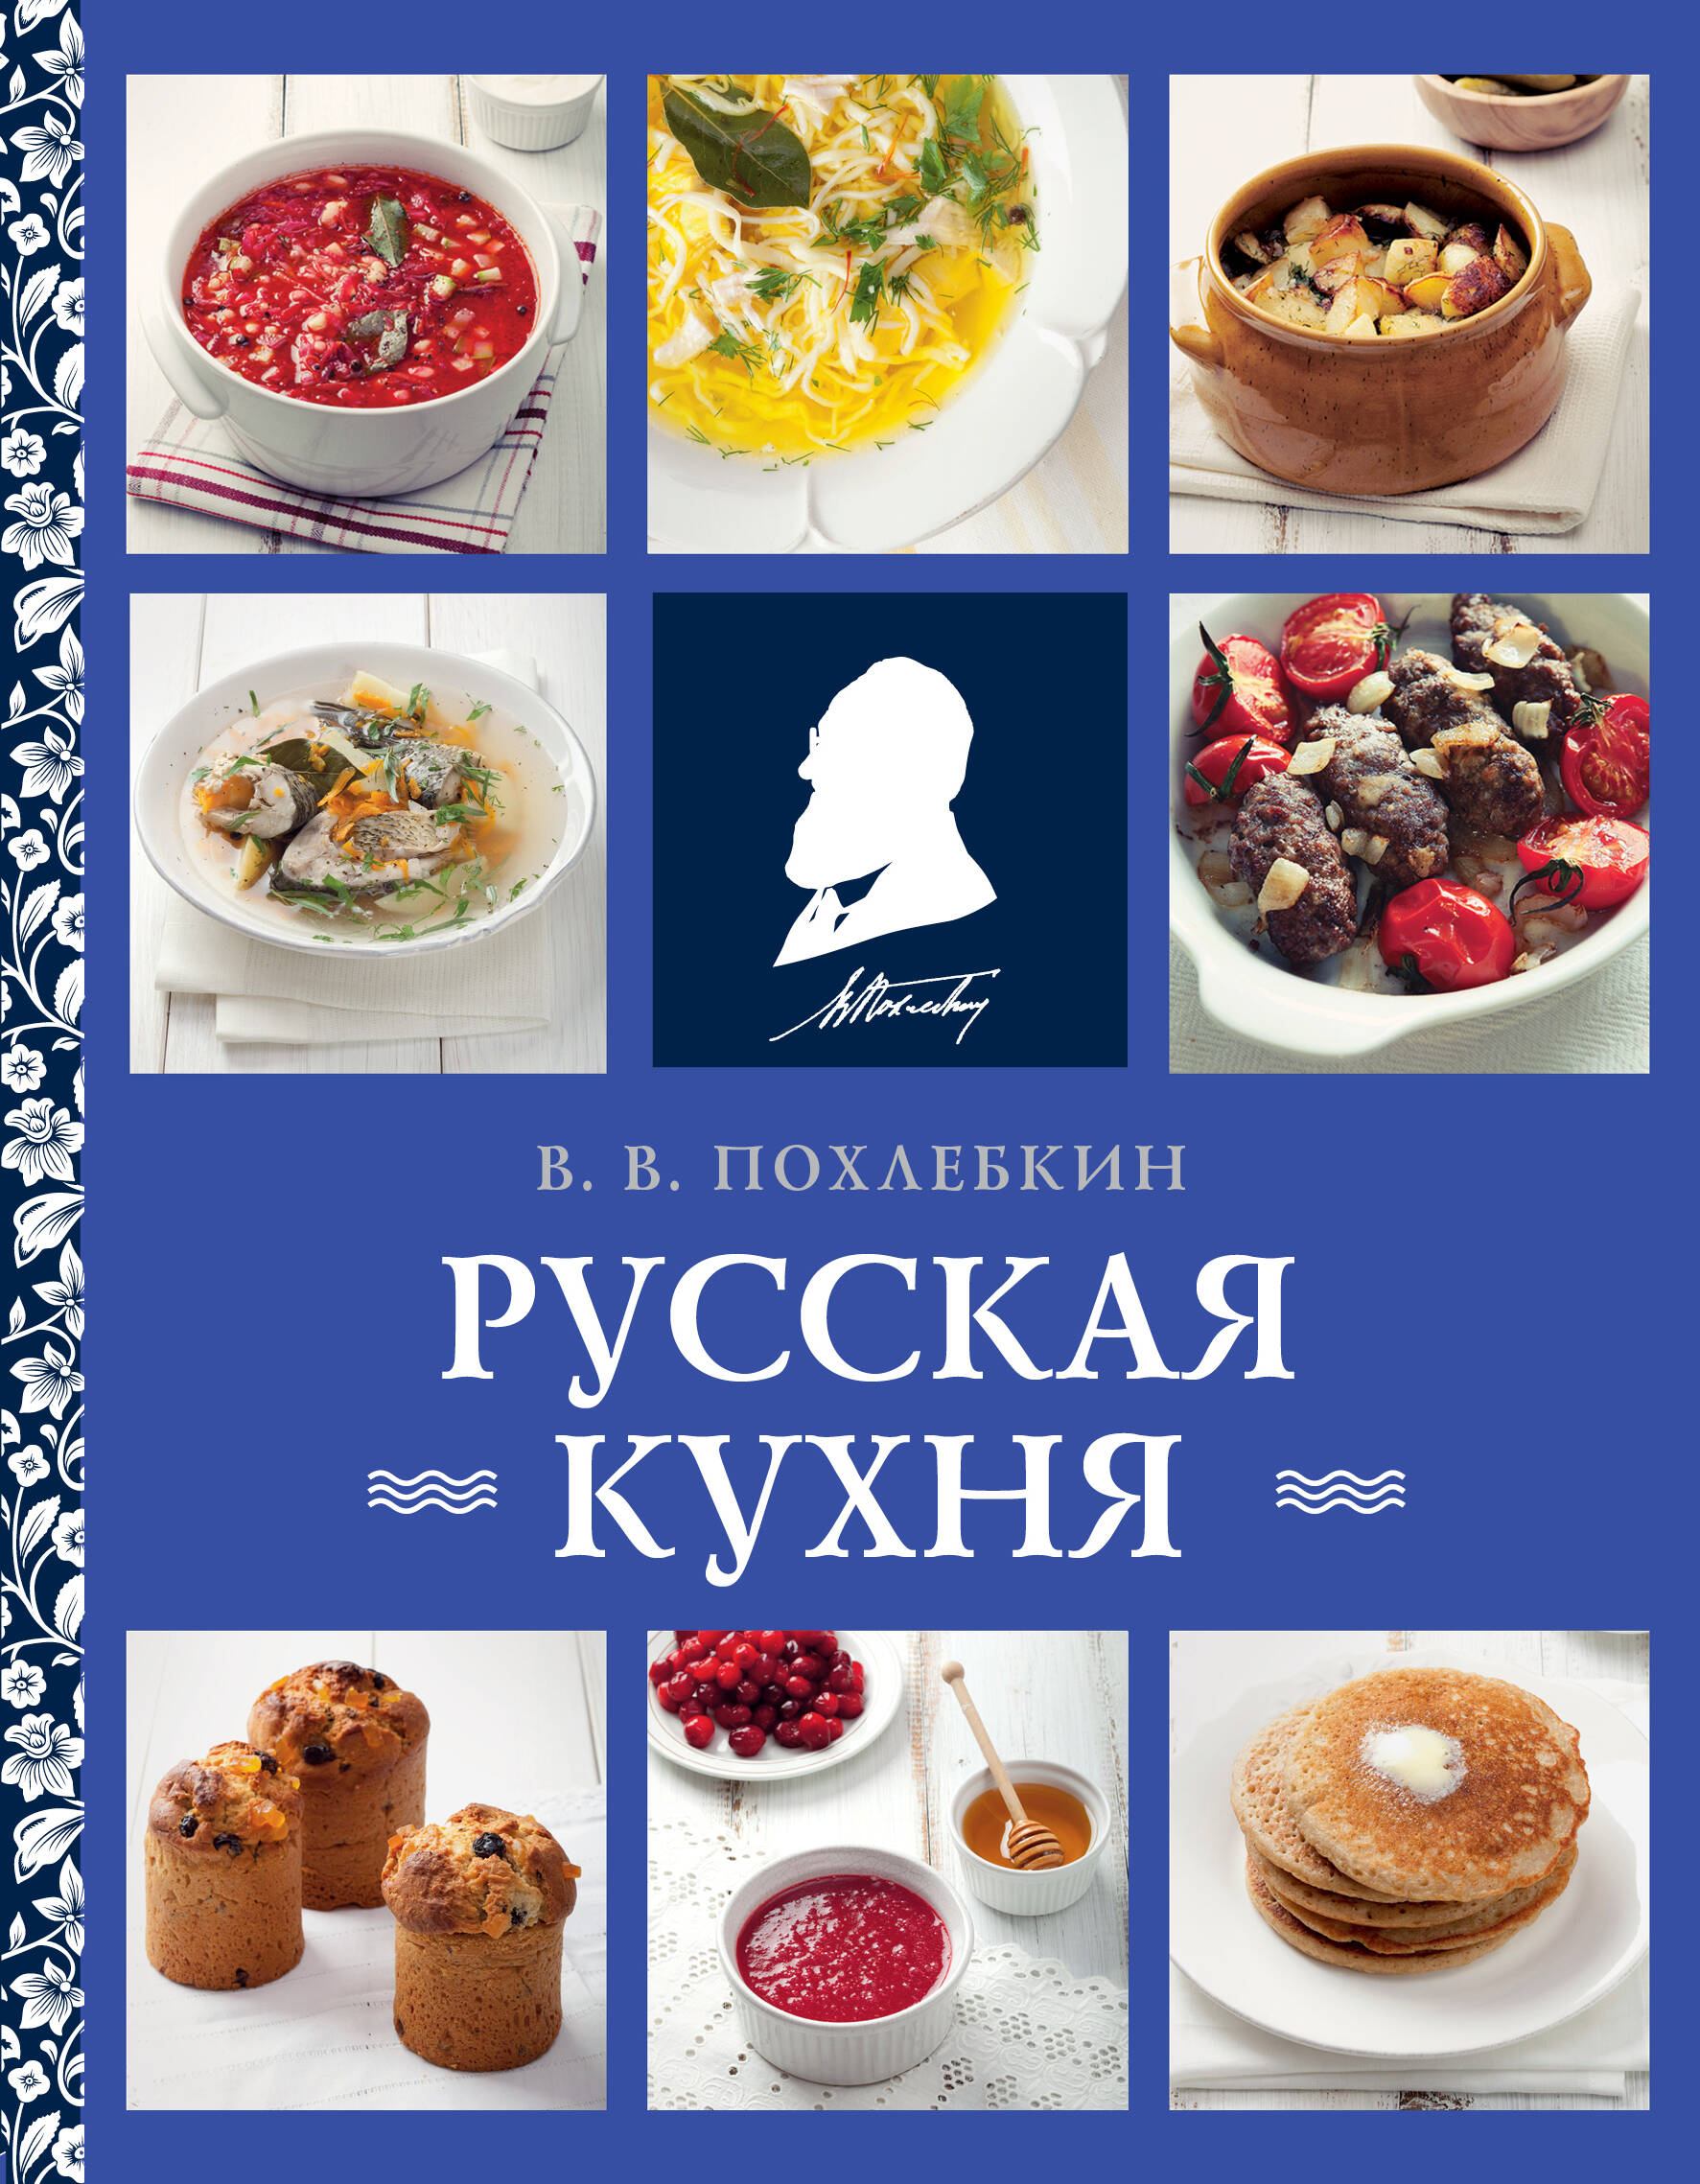 Русская кухня похлебкин в русская кухня фото